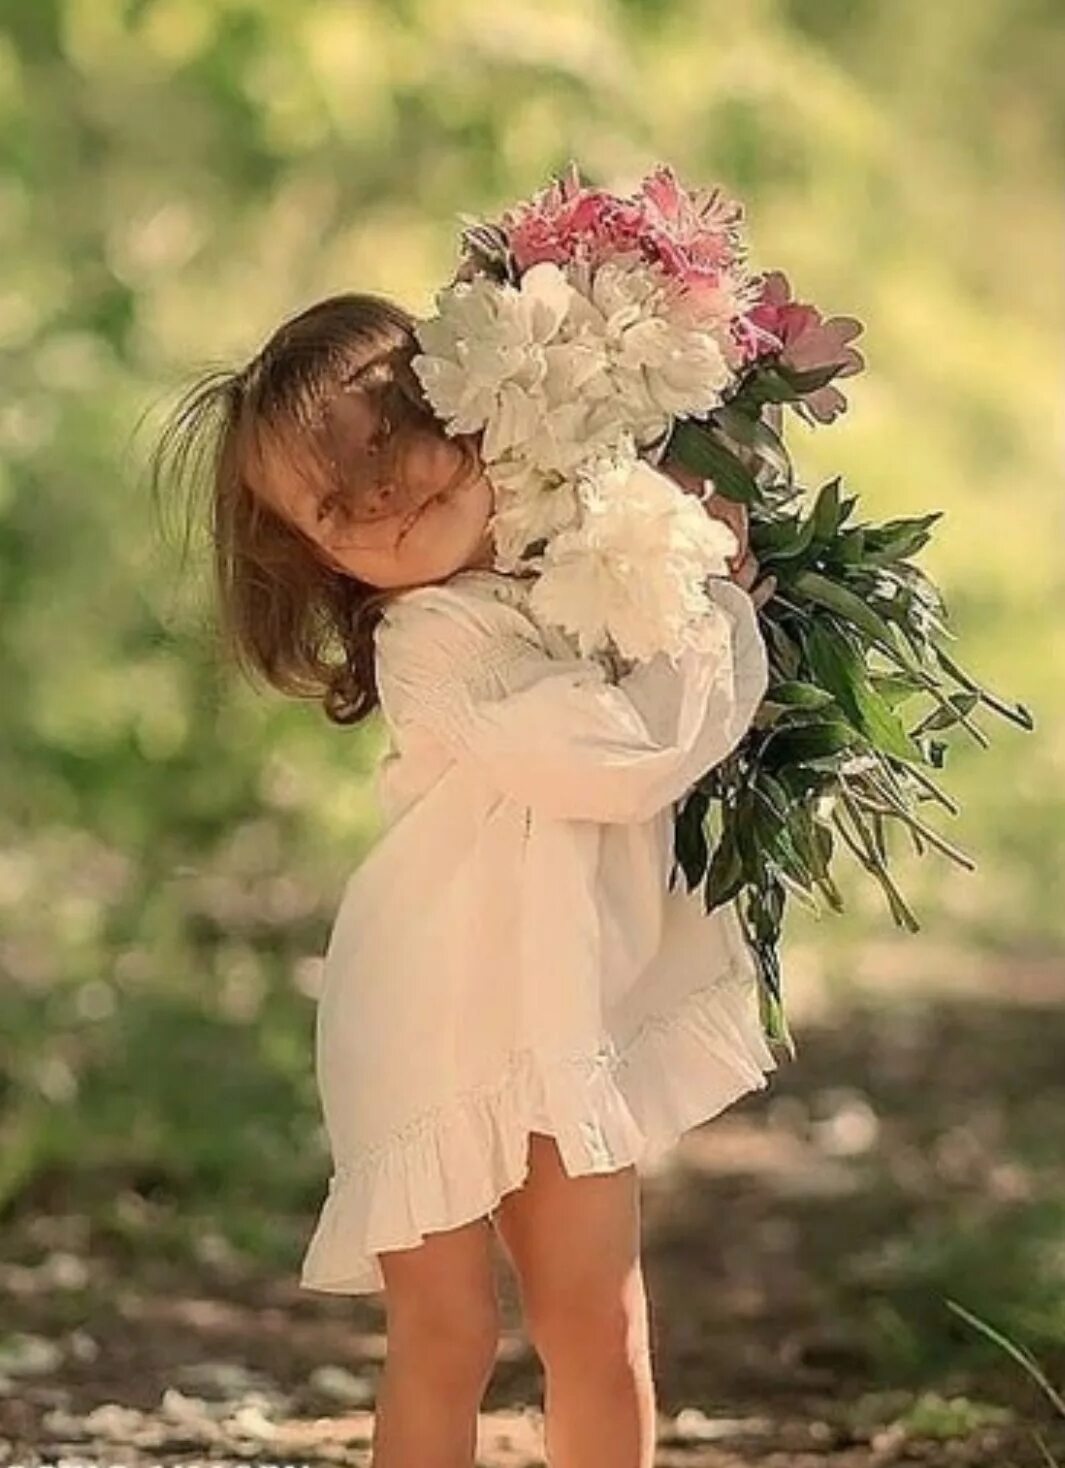 Дети дарят цветы. Счастливых моментов и радостных. Счастливые моменты жизни. Счастье в простом.